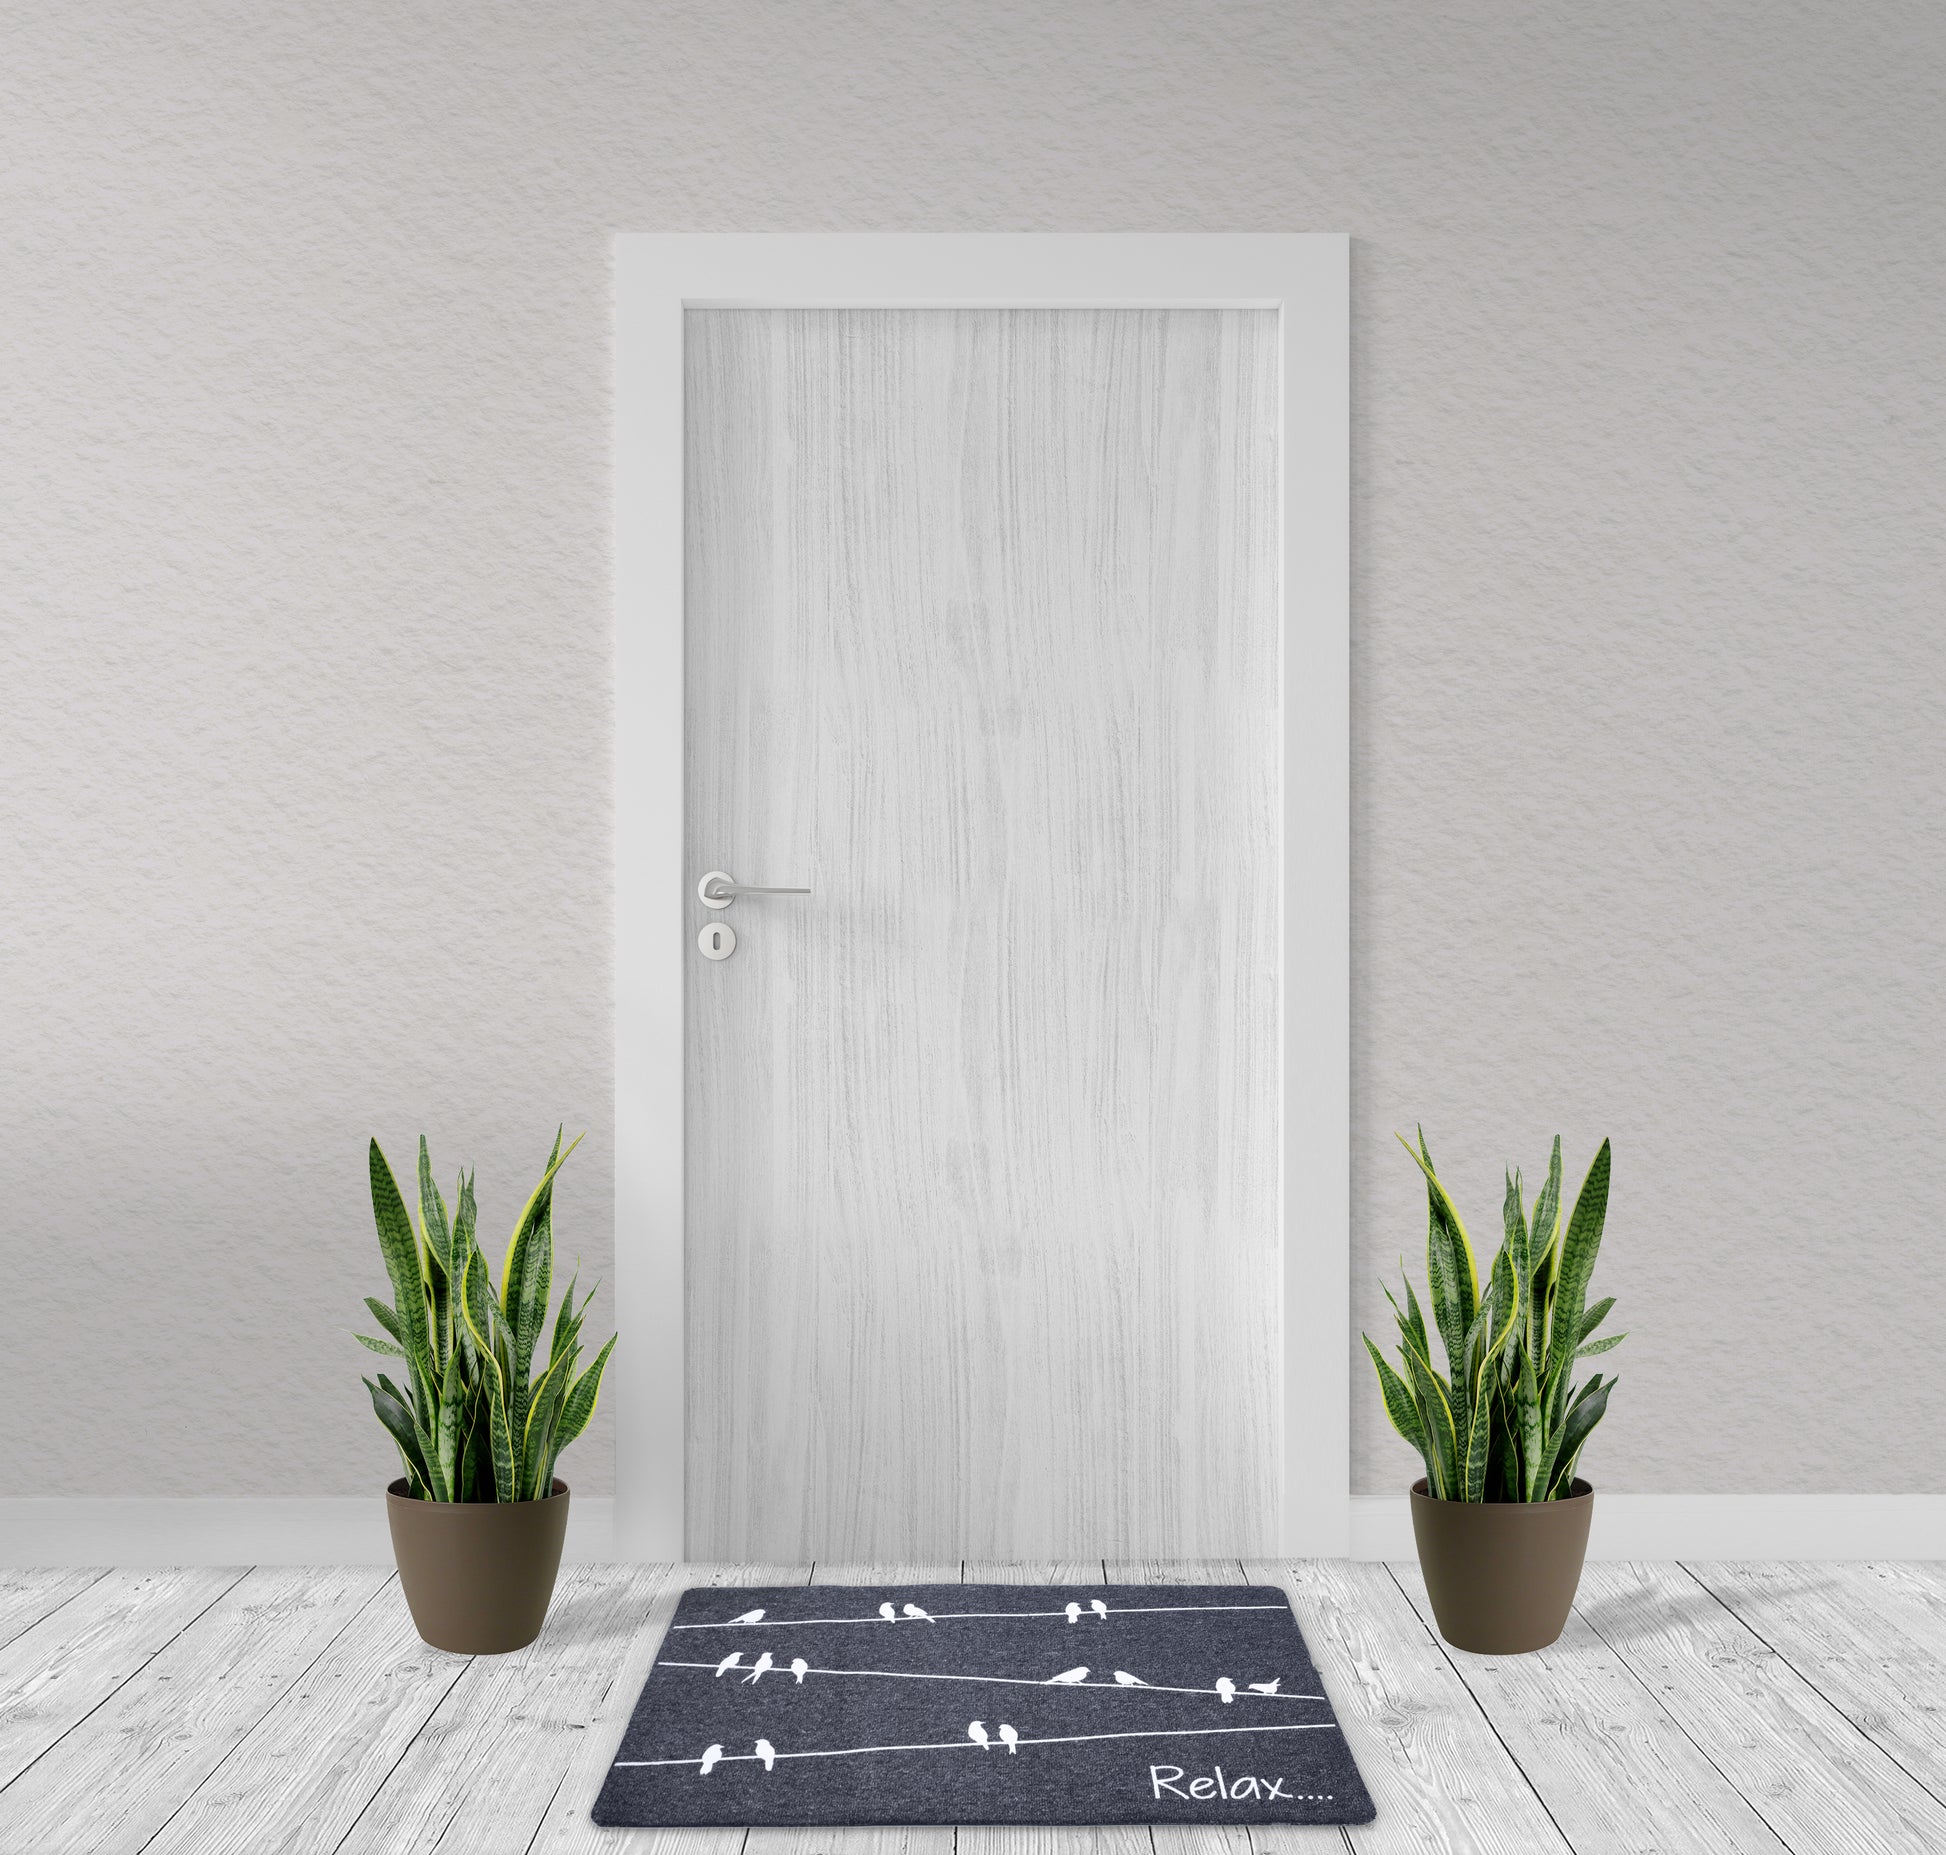 Linka Home 30”x18” Durable Natural Rubber Front Door Mat - Indoor Outdoor  Doormat - Low Profile Waterproof Non Slip Heavy Duty Outdoor Mat for Home